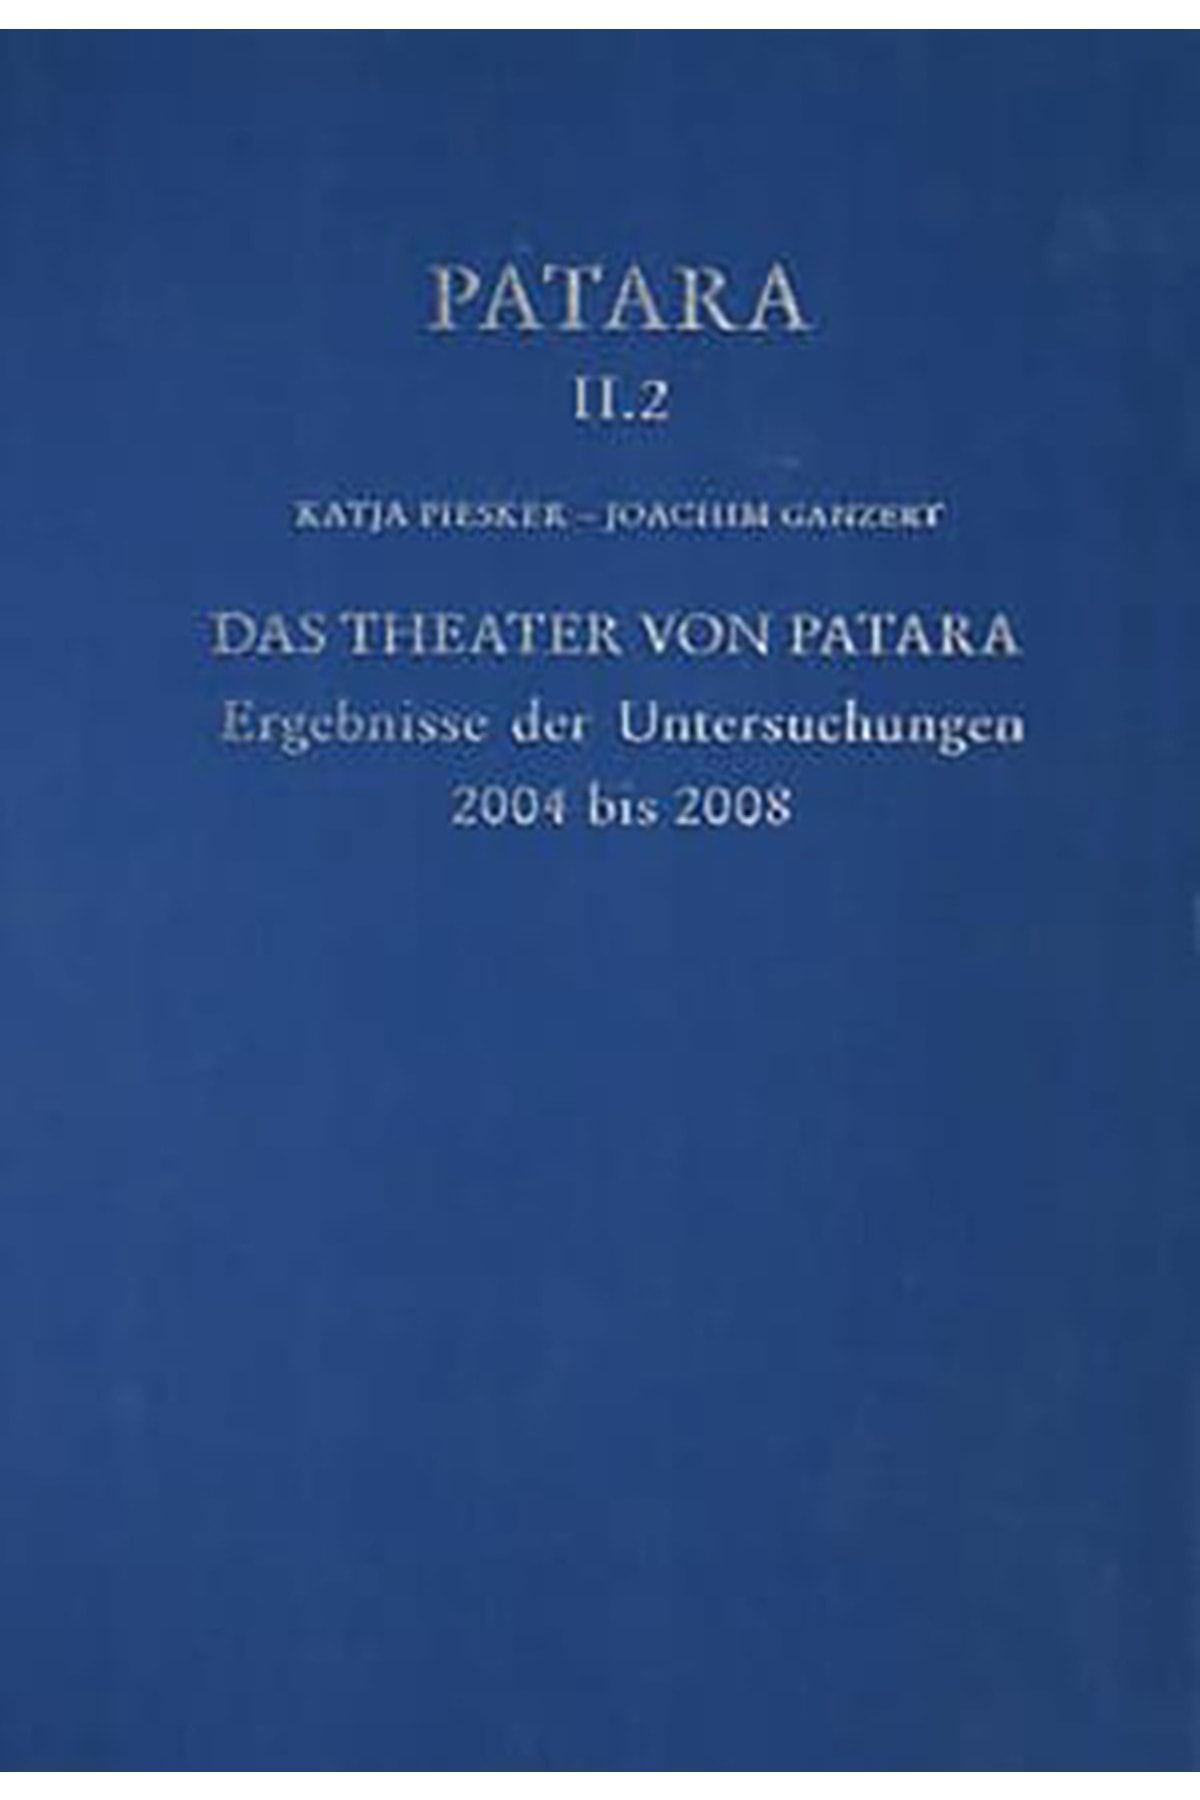 Ege Yayınları Patara Iı.2 Das Theater Von Patara Ergebnisse Der Untersuchungen 2004 Bis 2008